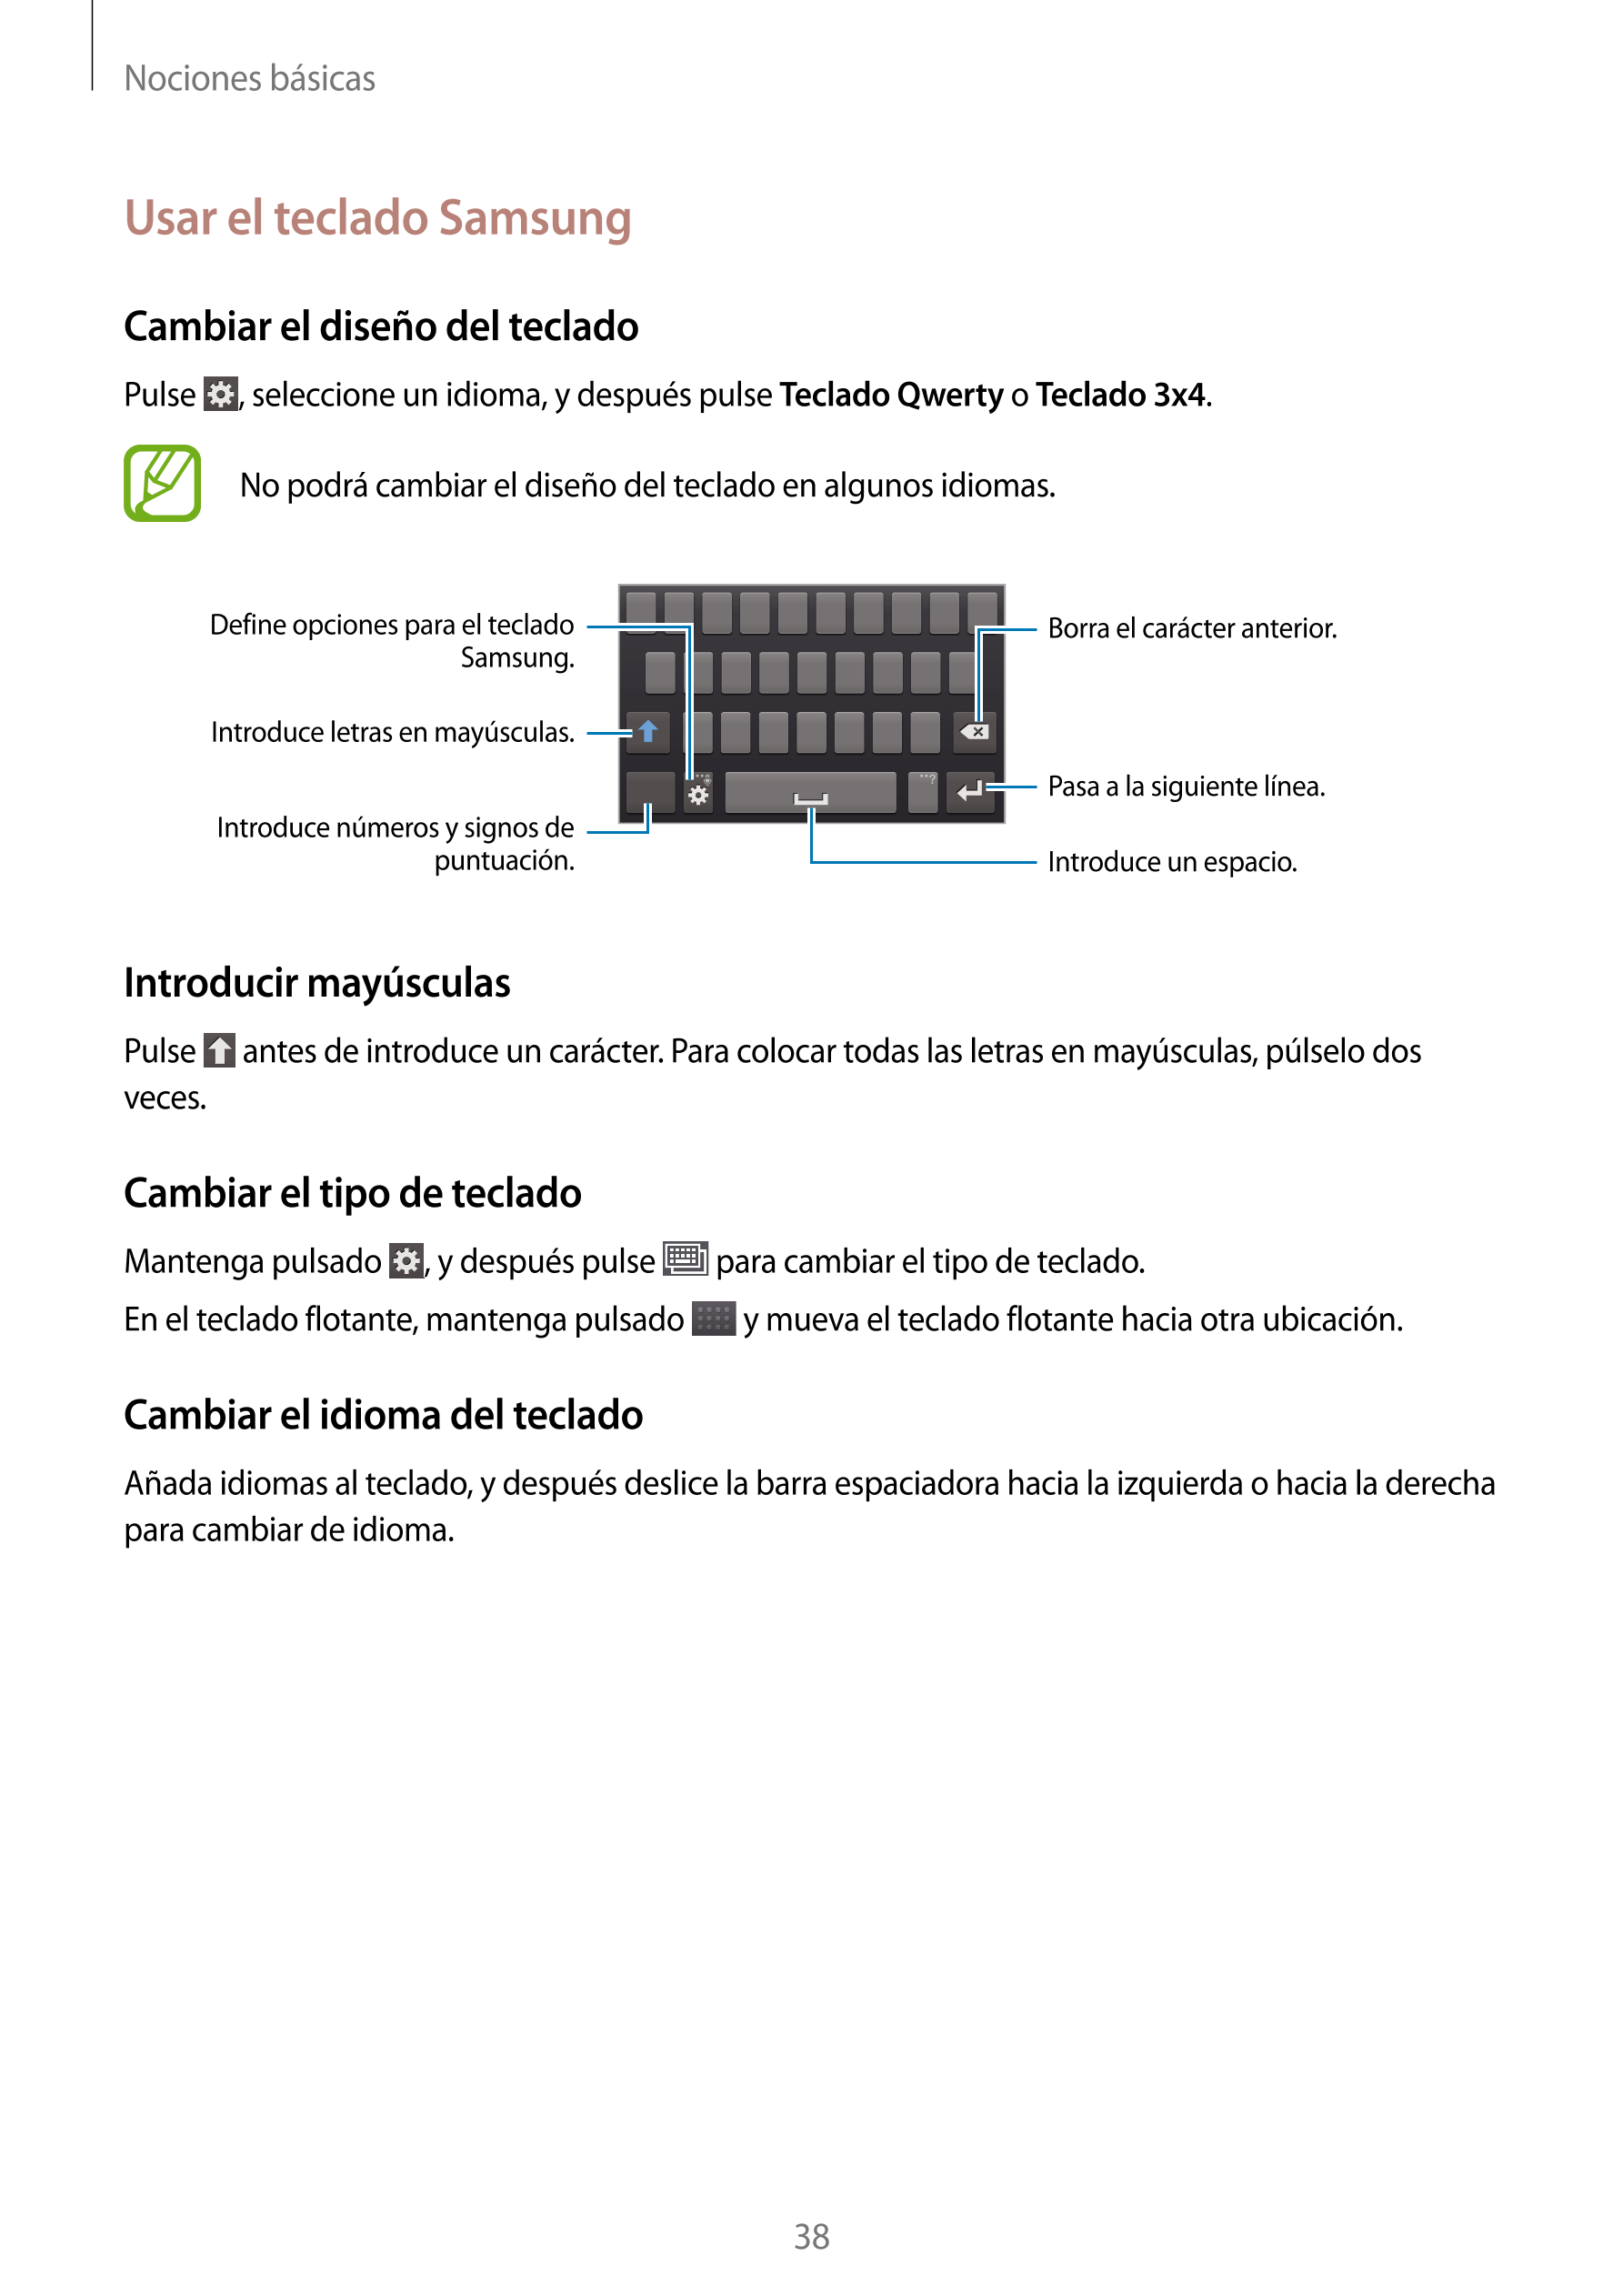 Nociones básicas
Usar el teclado Samsung
Cambiar el diseño del teclado
Pulse  , seleccione un idioma, y después pulse  Teclado Q